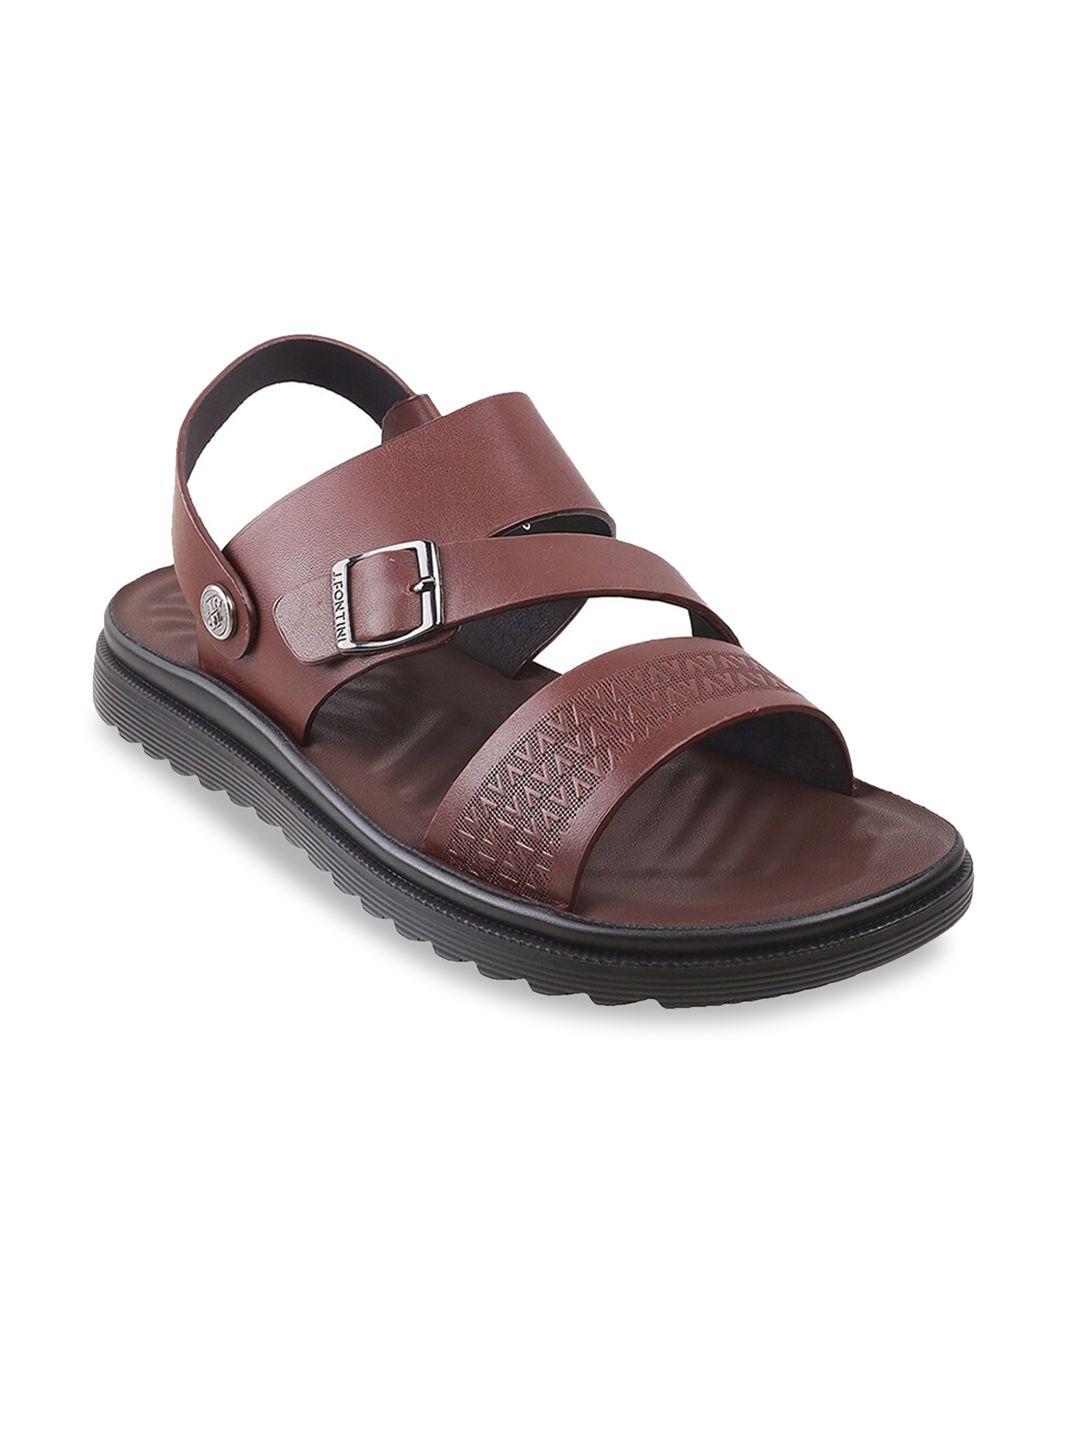 j fontini men brown comfort sandals